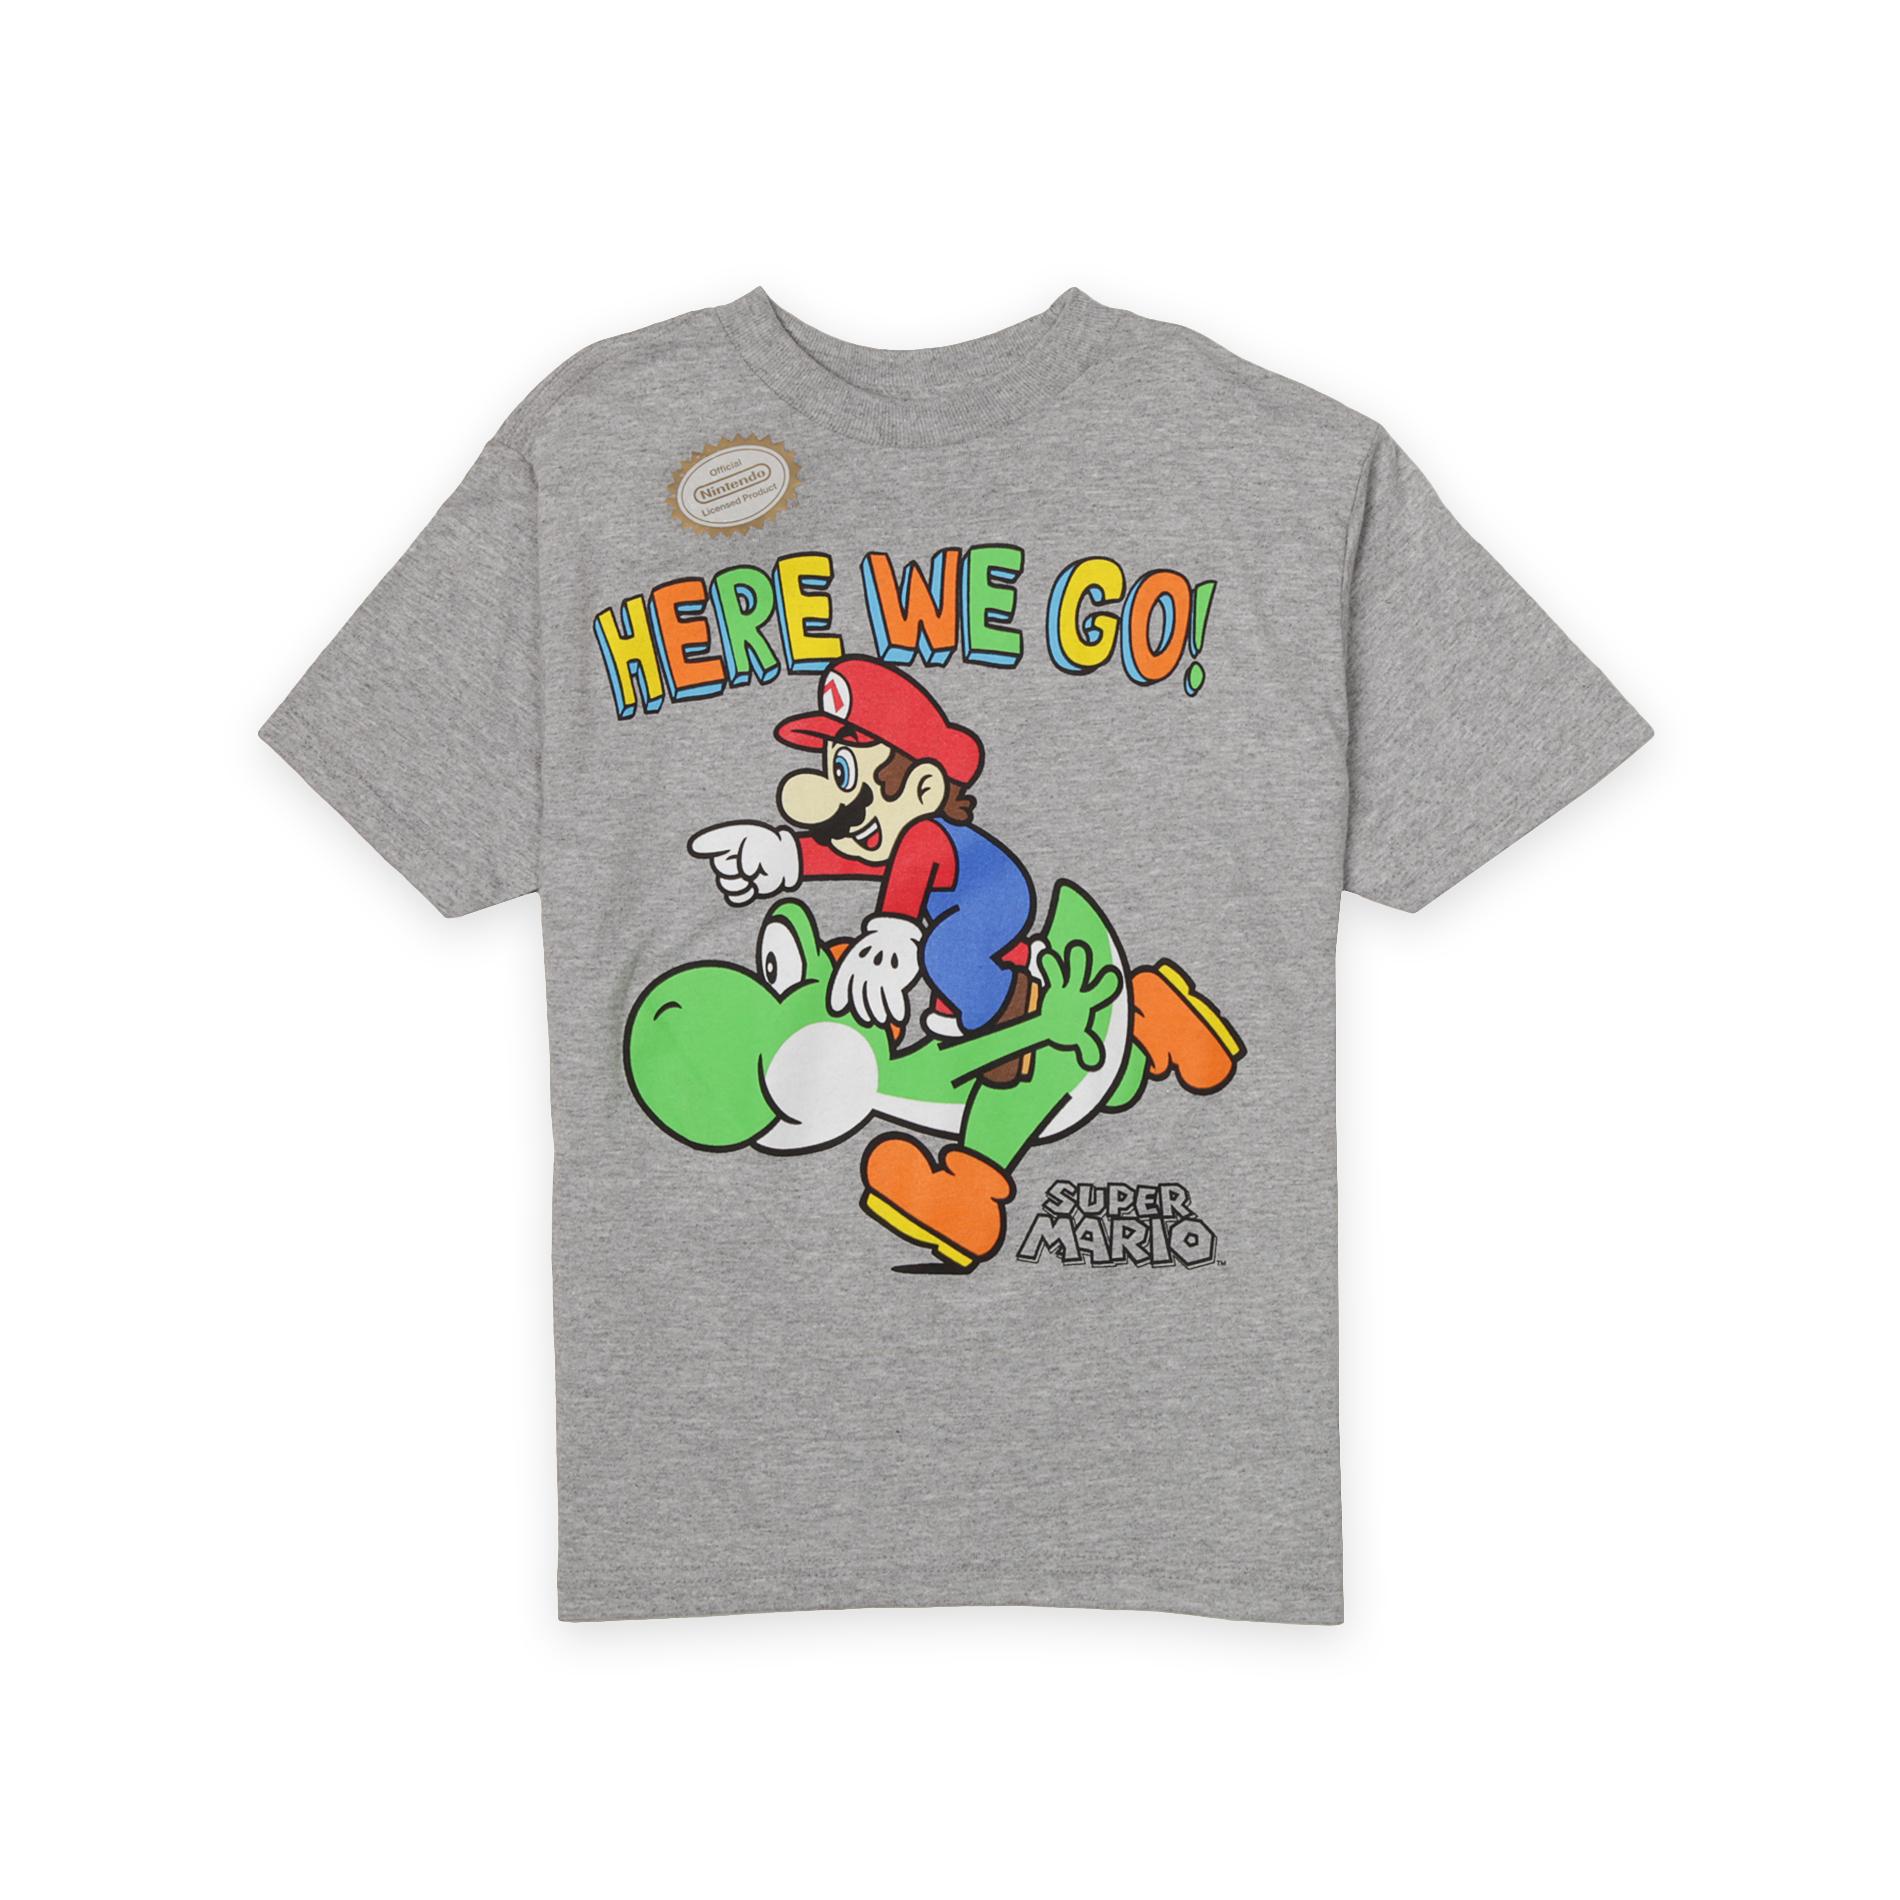 Nintendo Boy's Graphic T-Shirt - Super Mario & Yoshi